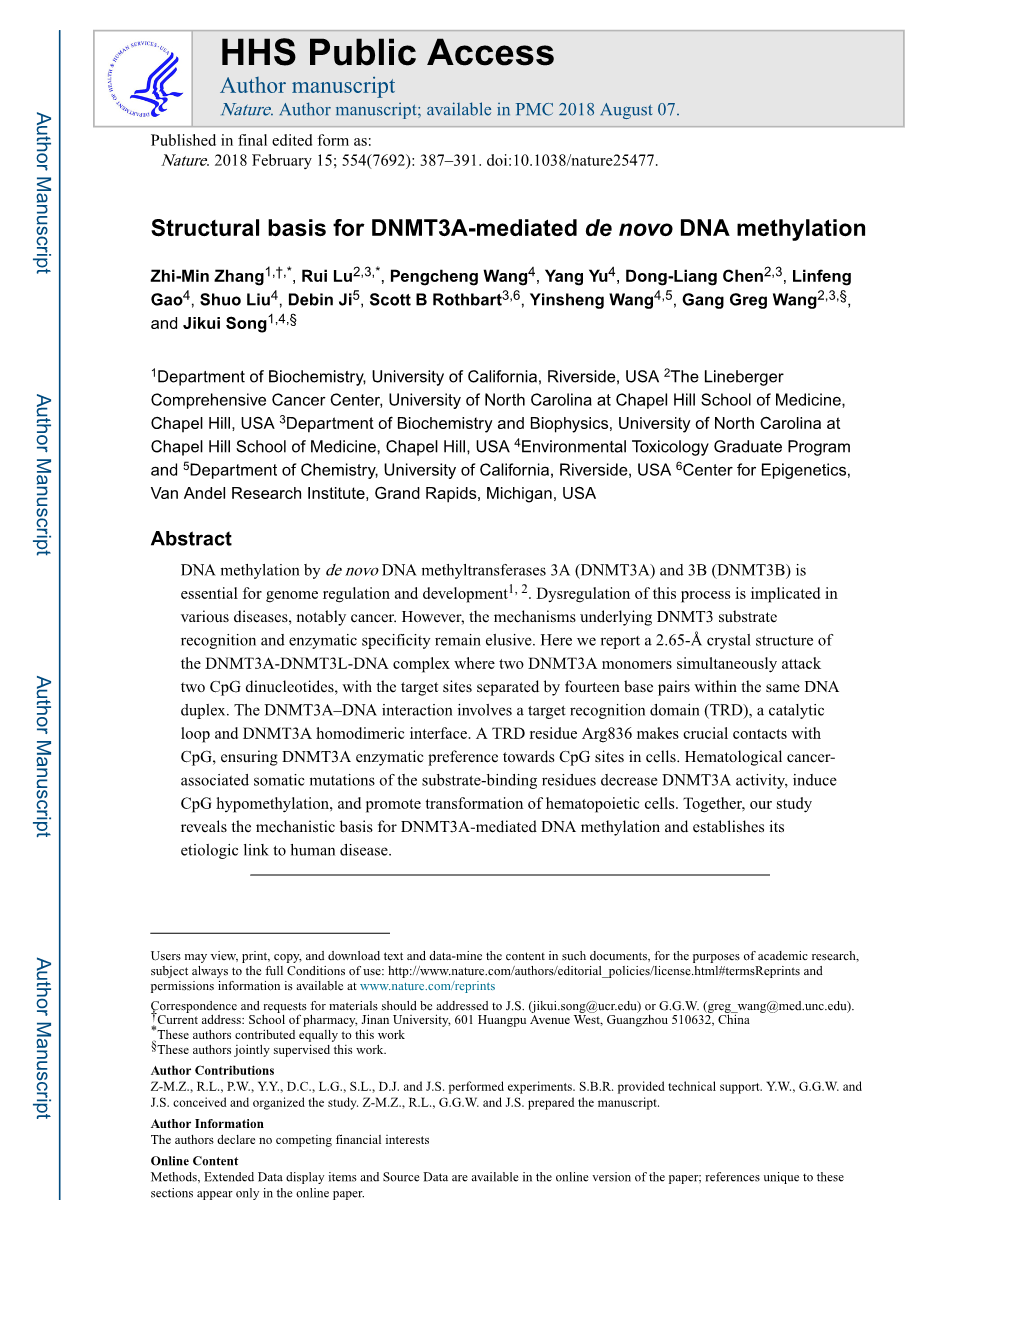 Structural Basis for DNMT3A-Mediated De Novo DNA Methylation